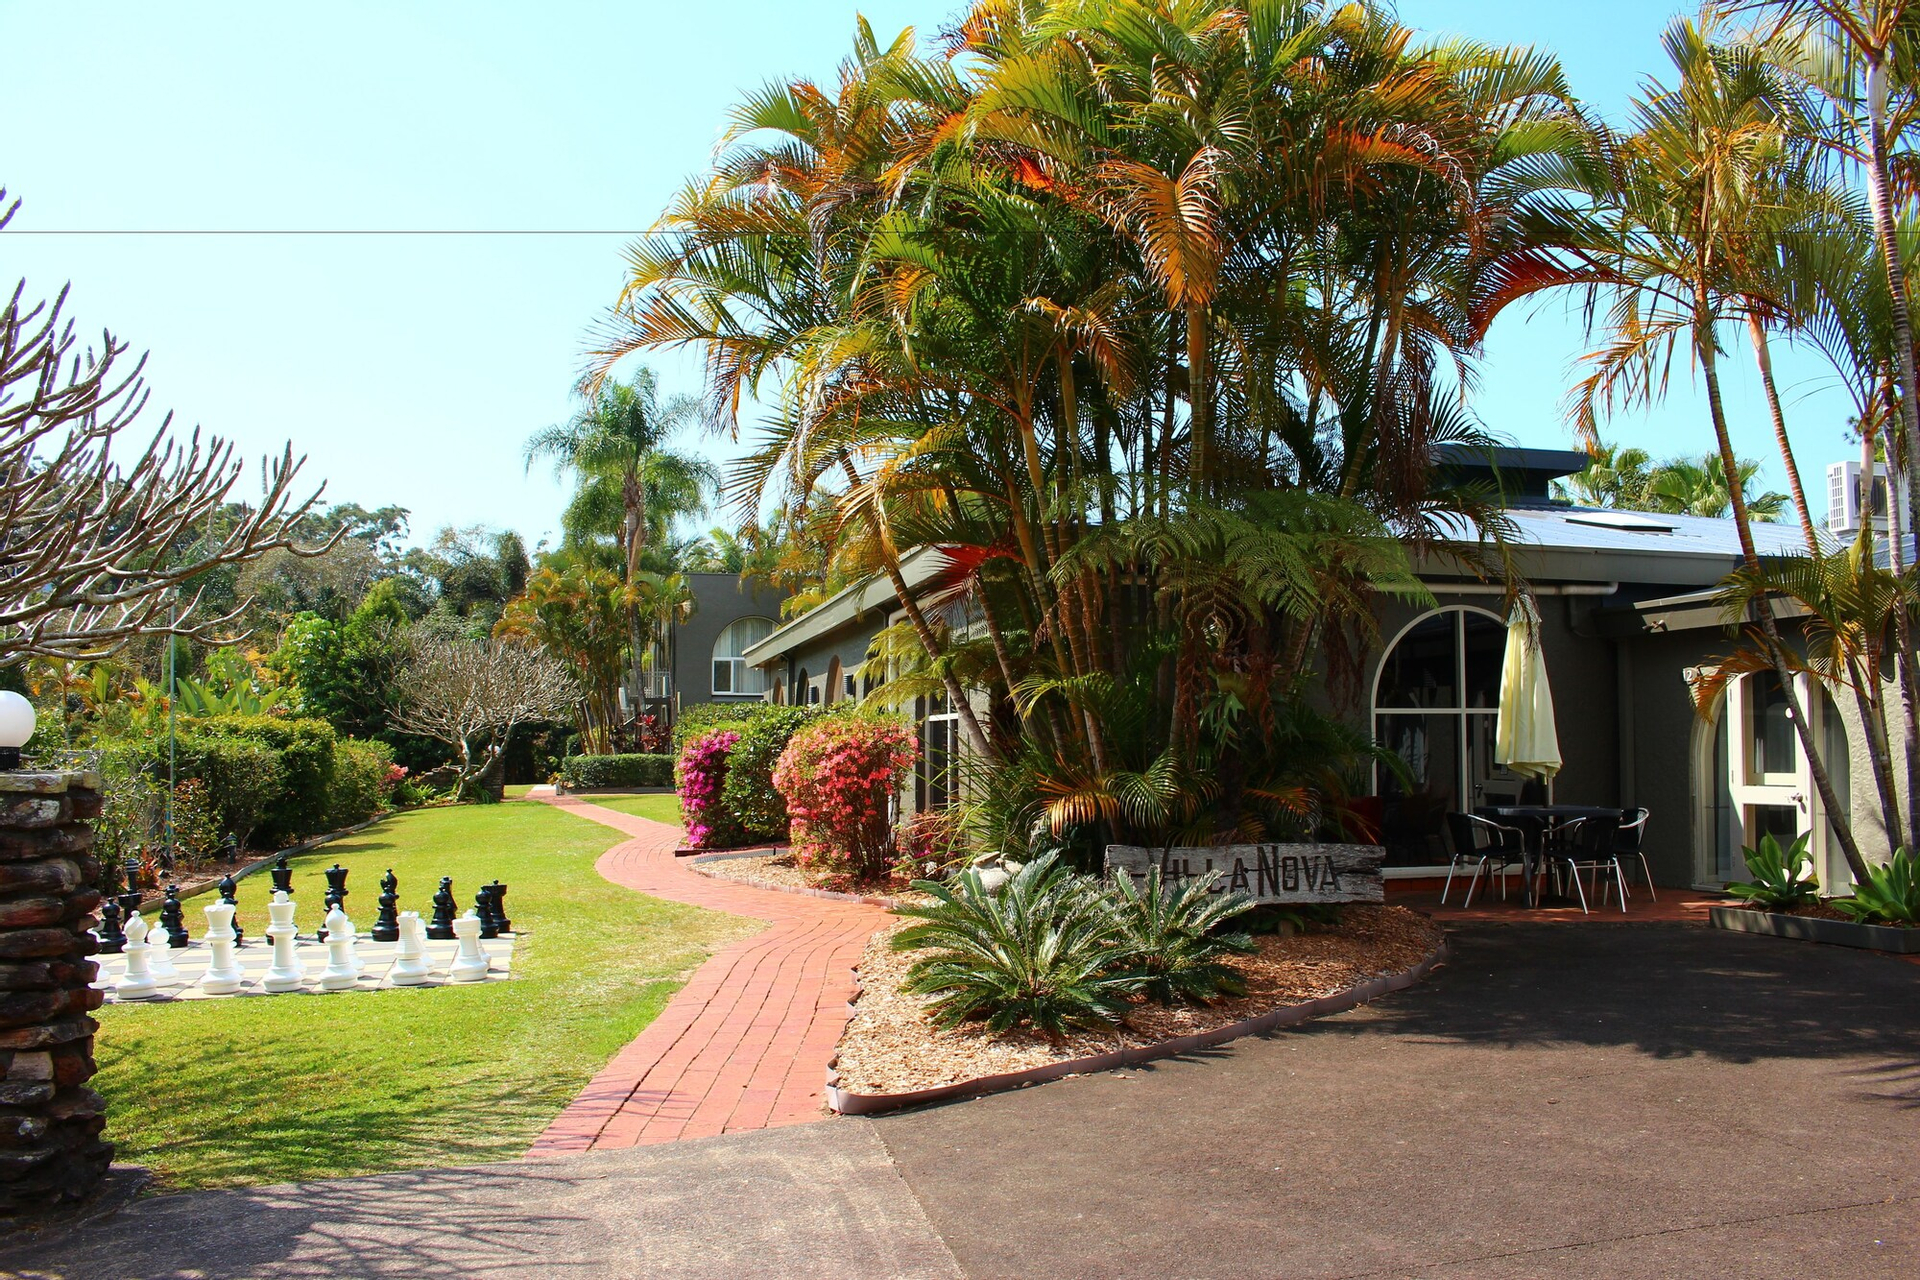 Exterior & Views 2, Korora Bay Village Resort, Coffs Harbour - Pt A